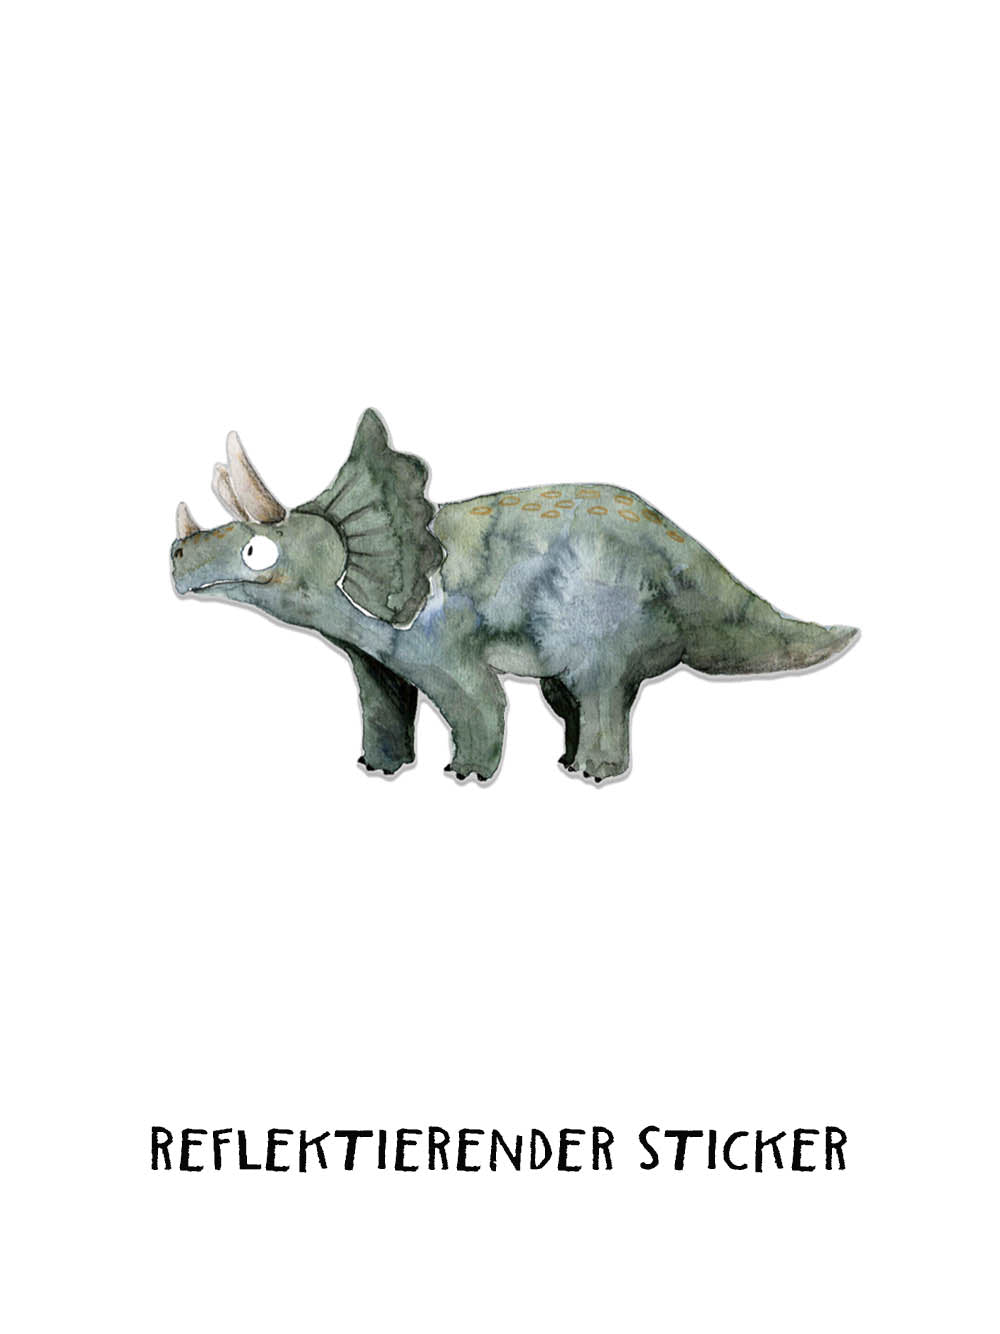 Reflektierender Sticker "Triceratops" | 3er Set